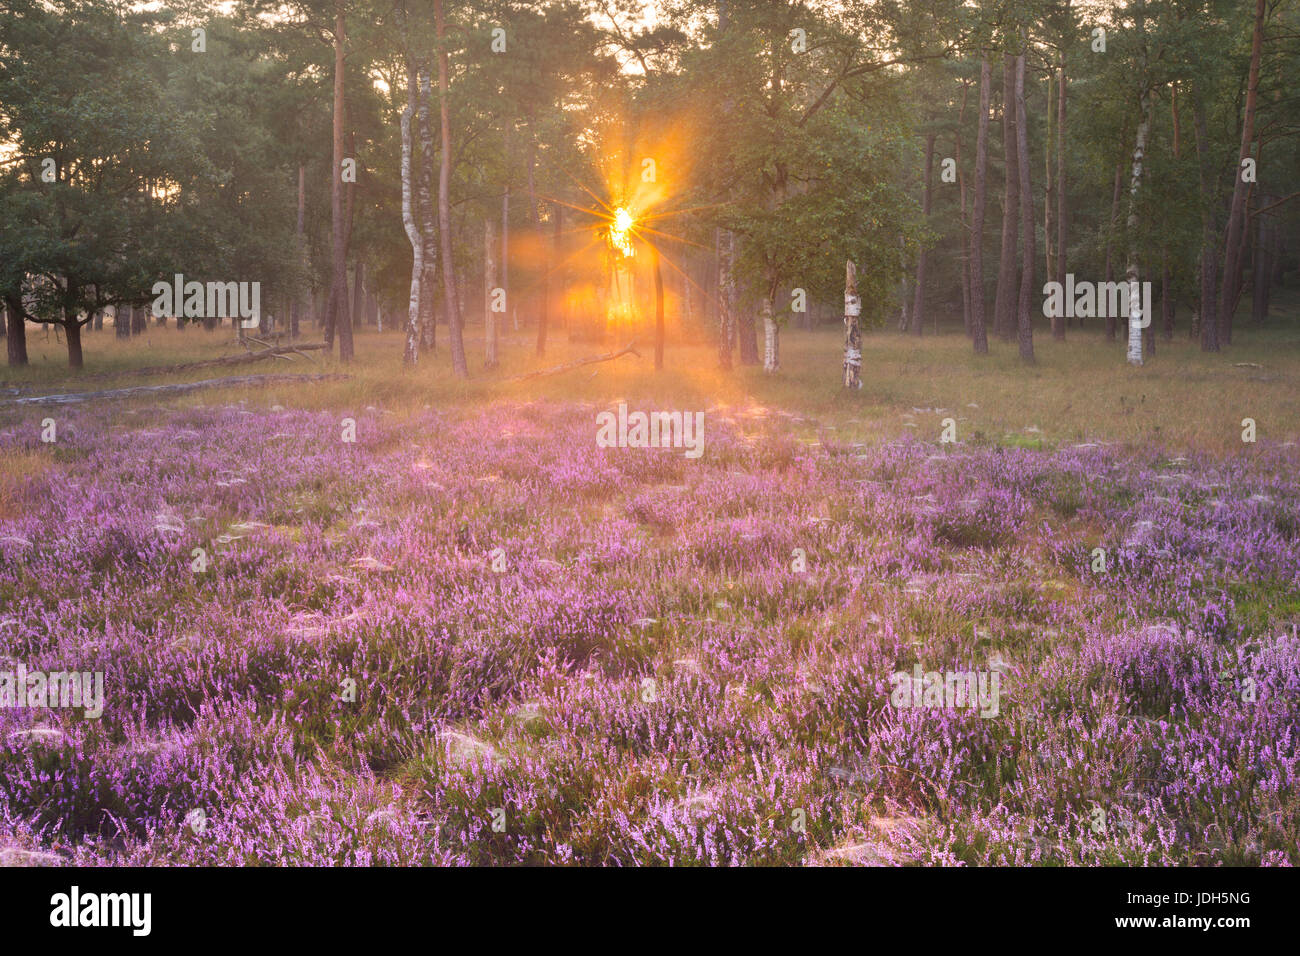 Blühende Heide am Rande eines Waldes. Fotografiert bei Sonnenaufgang in den Niederlanden. Stockfoto